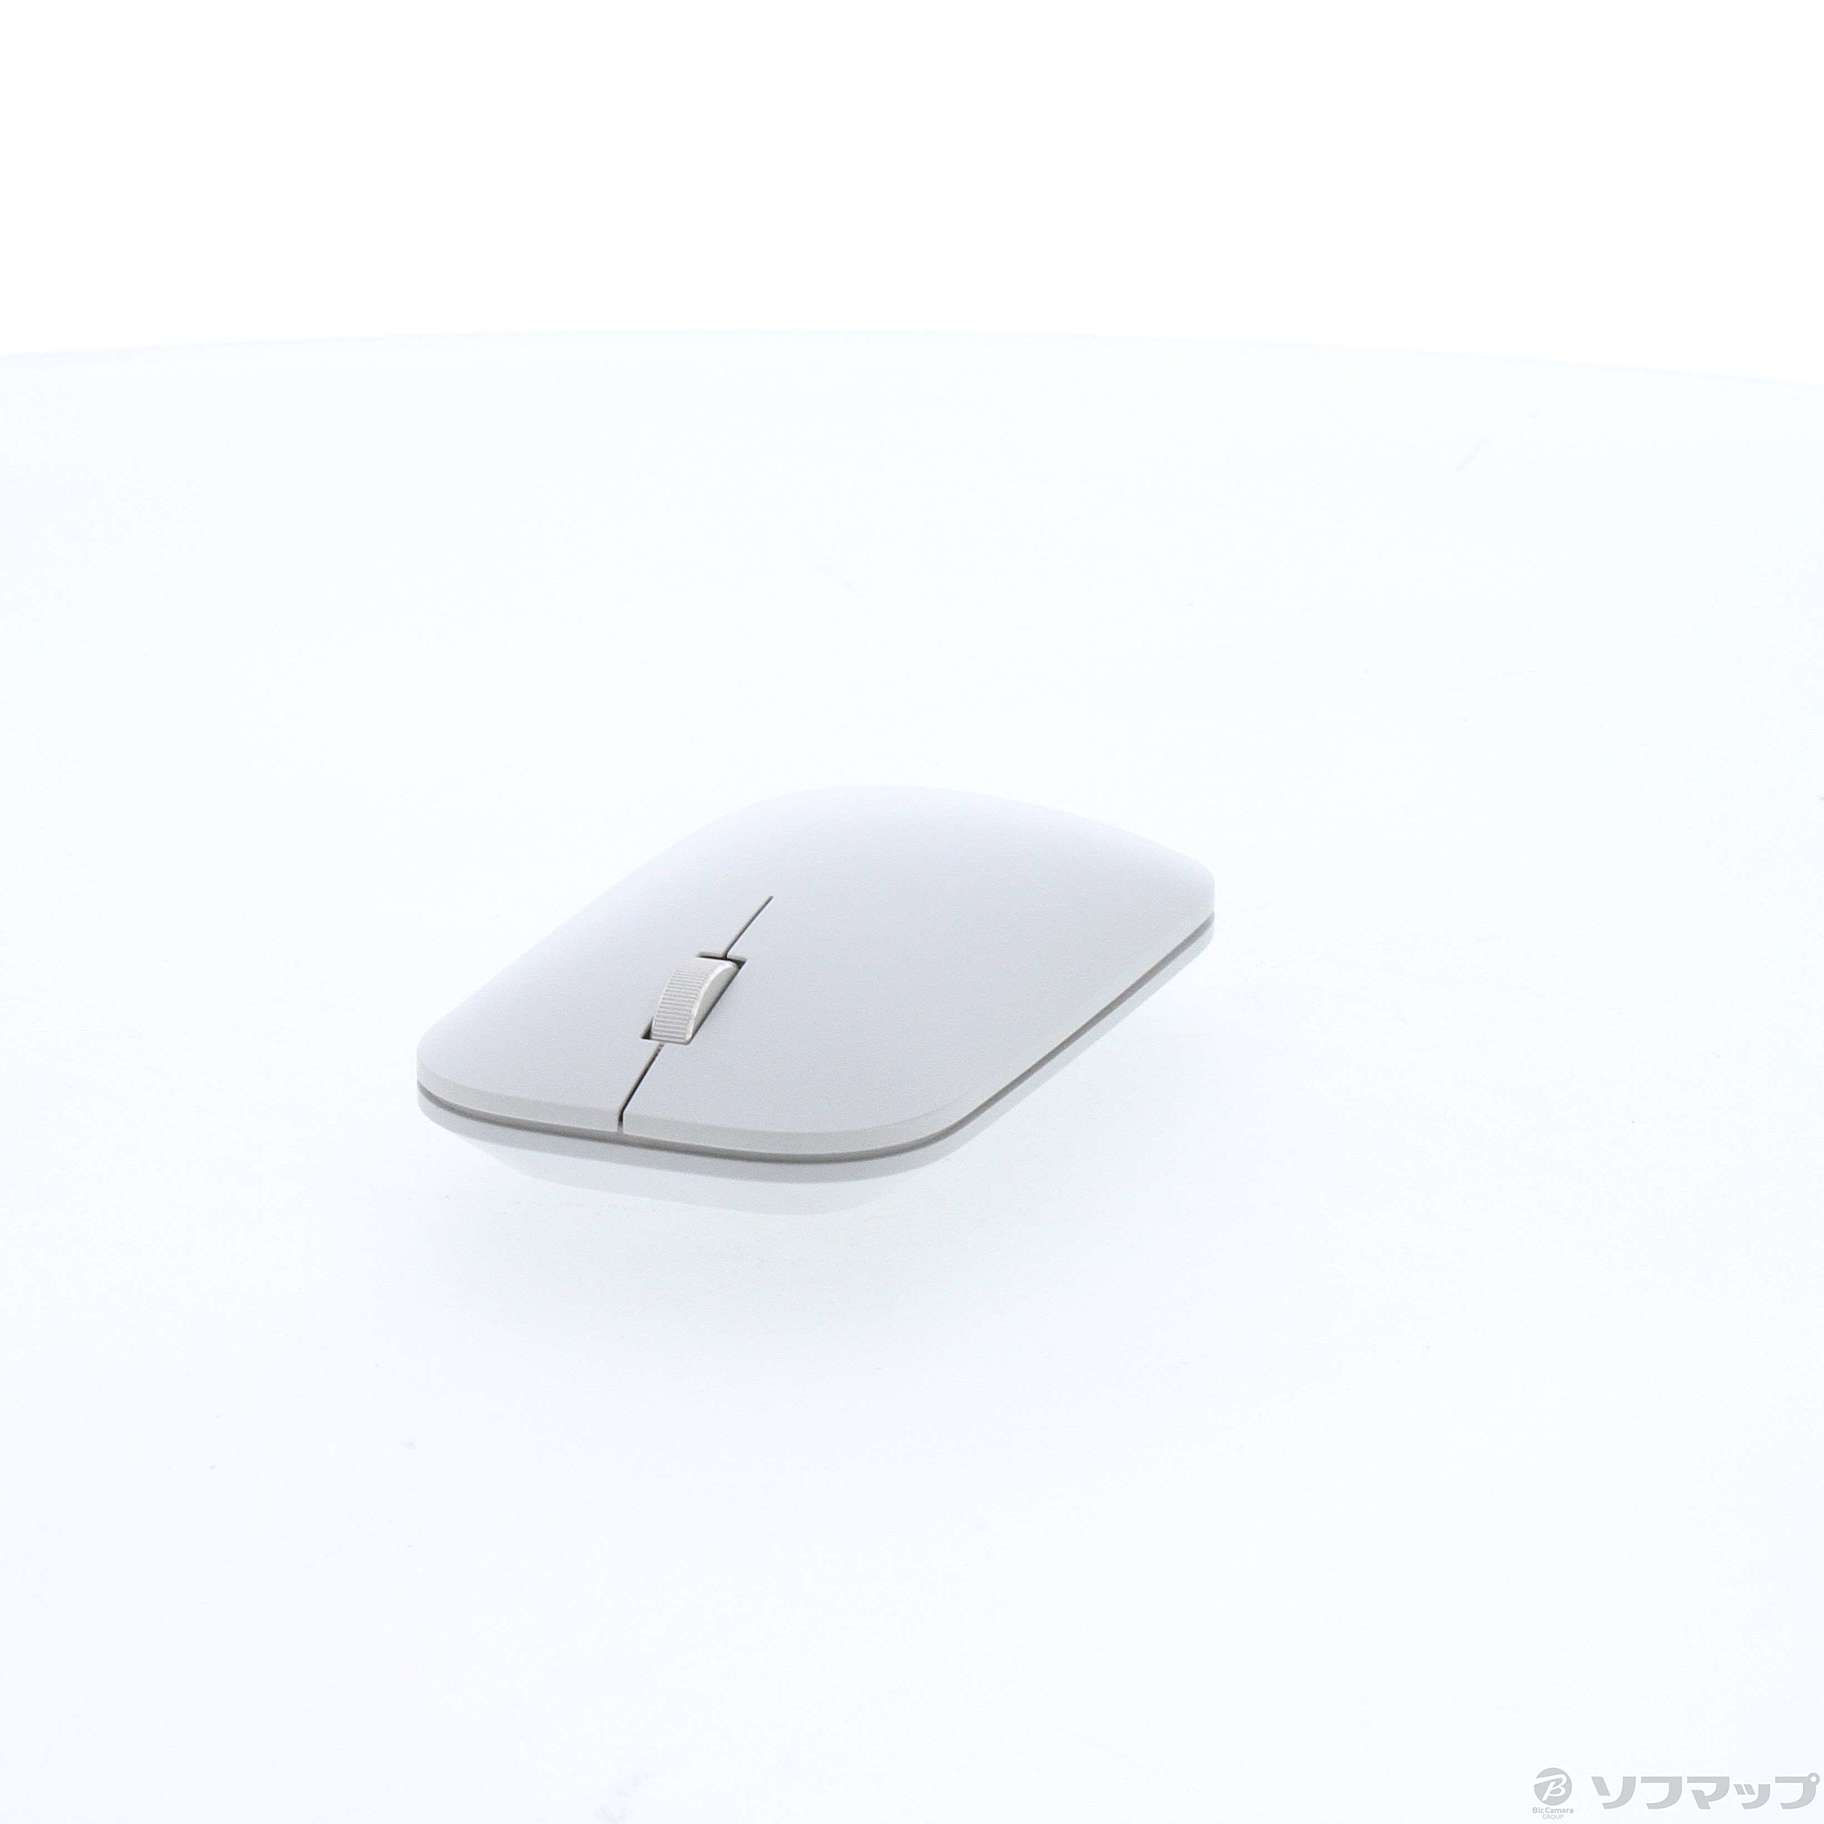 売筋品 Surface Wi-Fi モバイル マウス グレー KGY-00007 - マウス